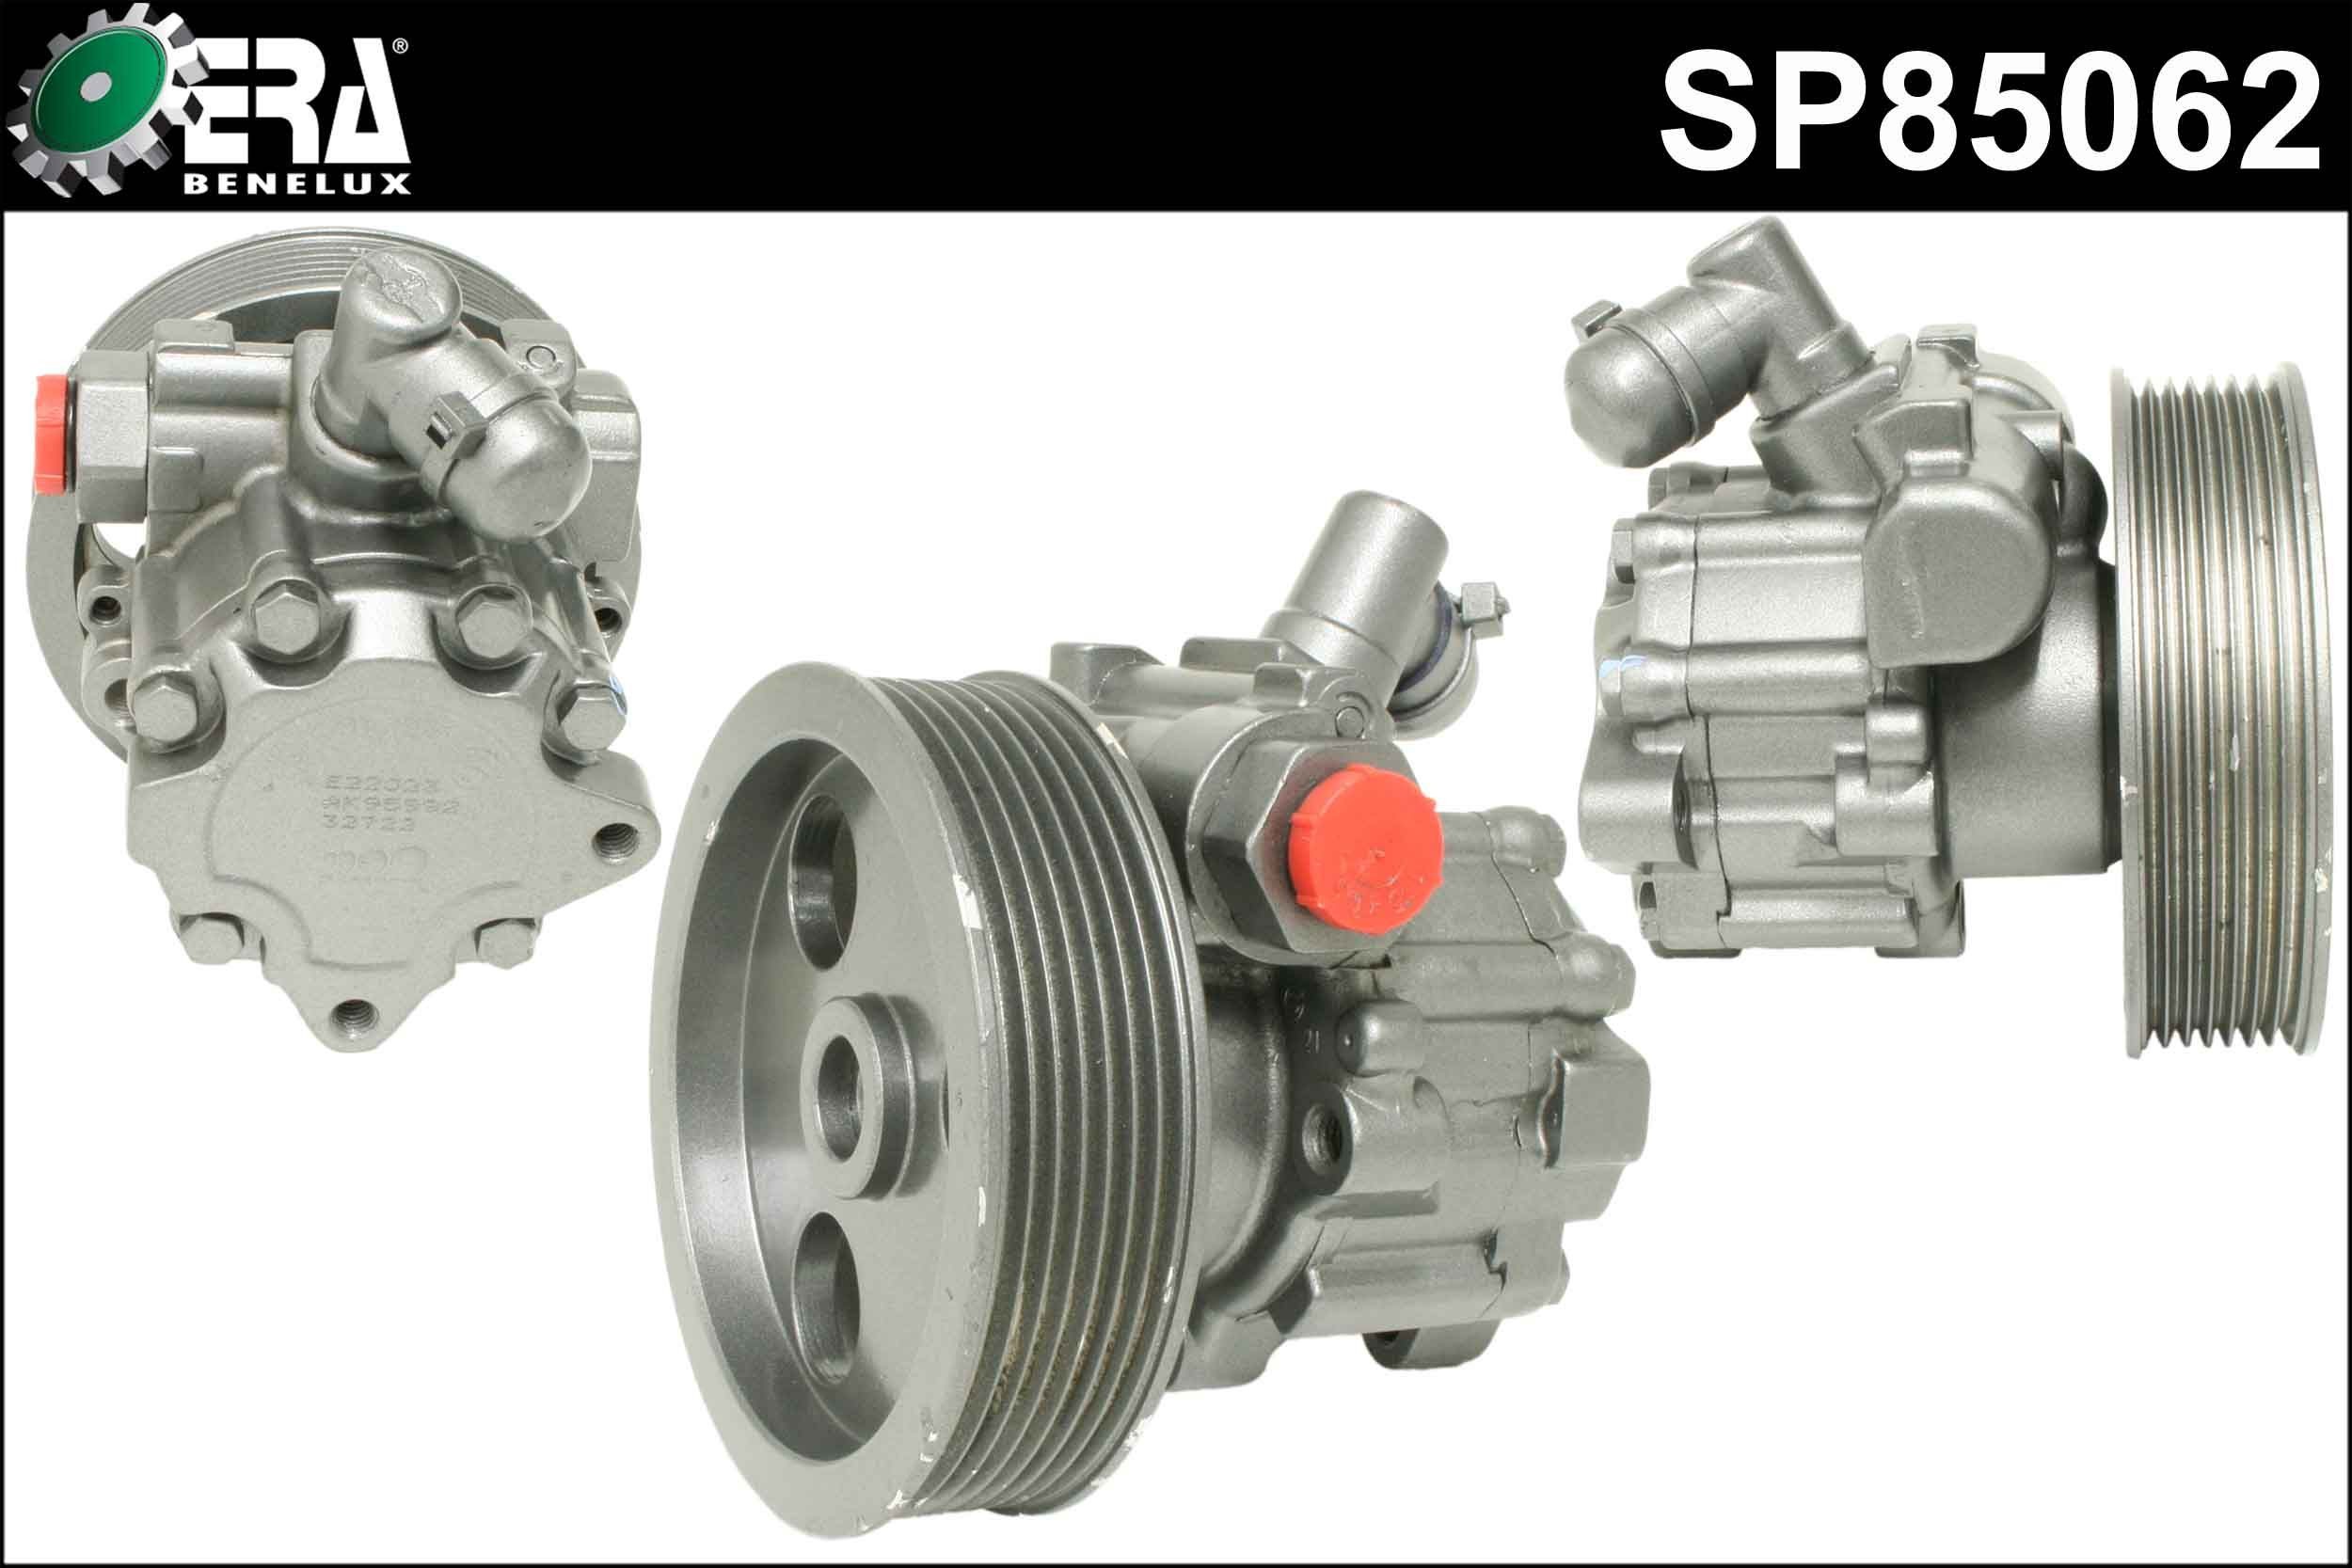 ERA Benelux SP85062 Power steering pump W164 ML 350 CDI 4-matic 211 hp Diesel 2011 price